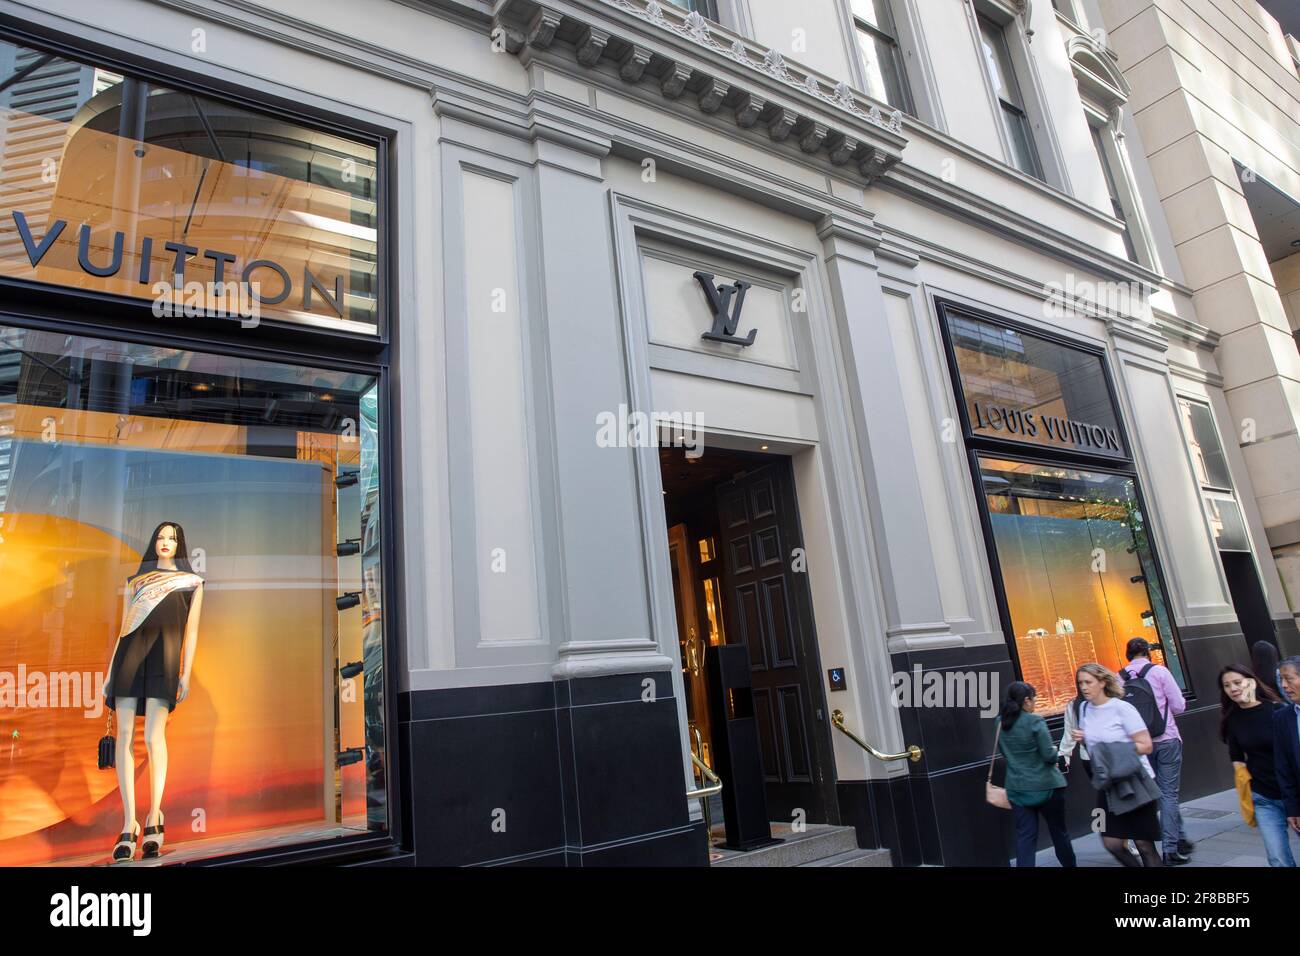 Louis Vuitton x Grace Coddington Launch Party At LV NYC Pop-Up